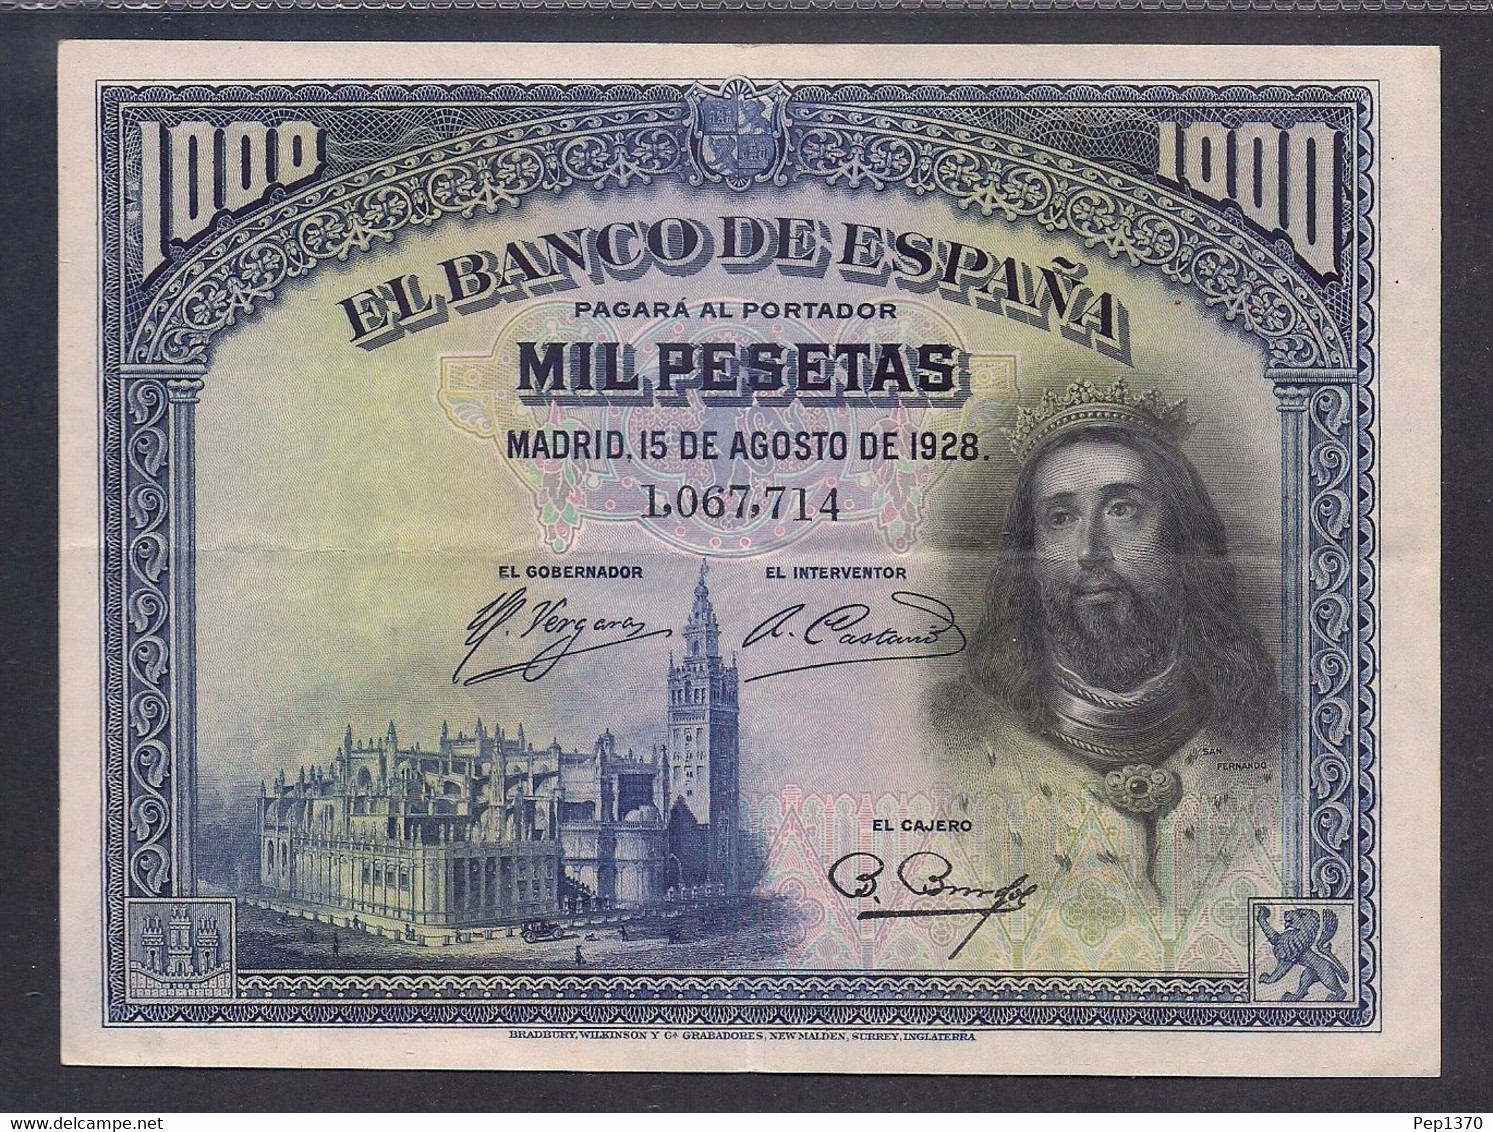 ESPAÑA - BILLETE DE 1000 PESETAS DE 1928 - MUY BIEN CONSERVADO - 1000 Pesetas